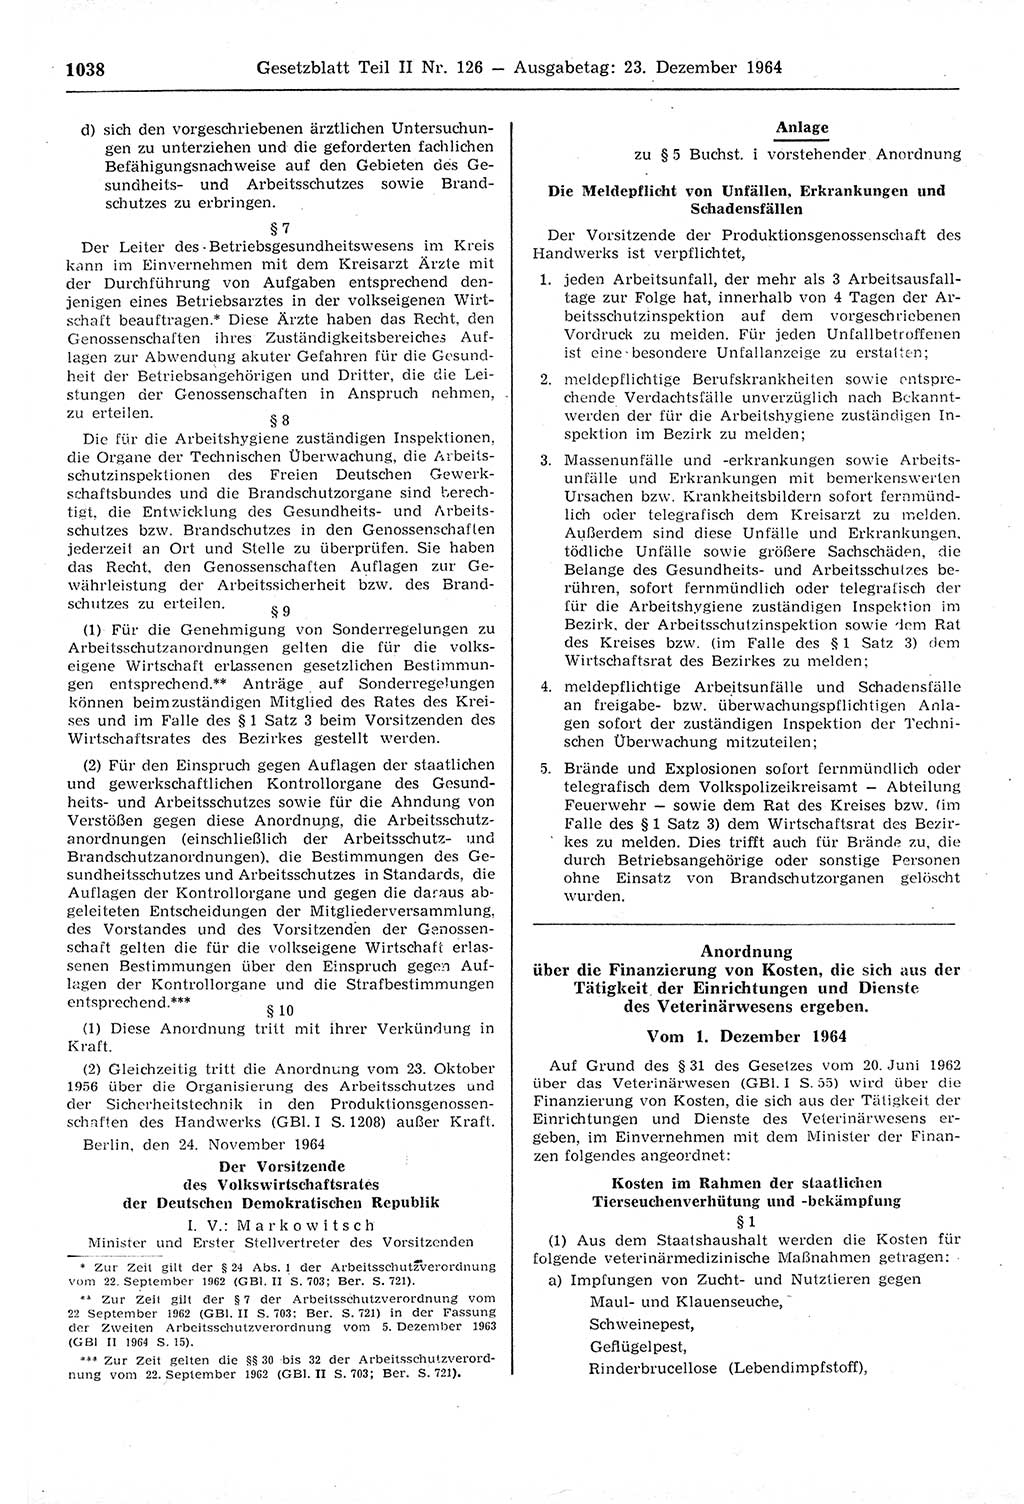 Gesetzblatt (GBl.) der Deutschen Demokratischen Republik (DDR) Teil ⅠⅠ 1964, Seite 1038 (GBl. DDR ⅠⅠ 1964, S. 1038)